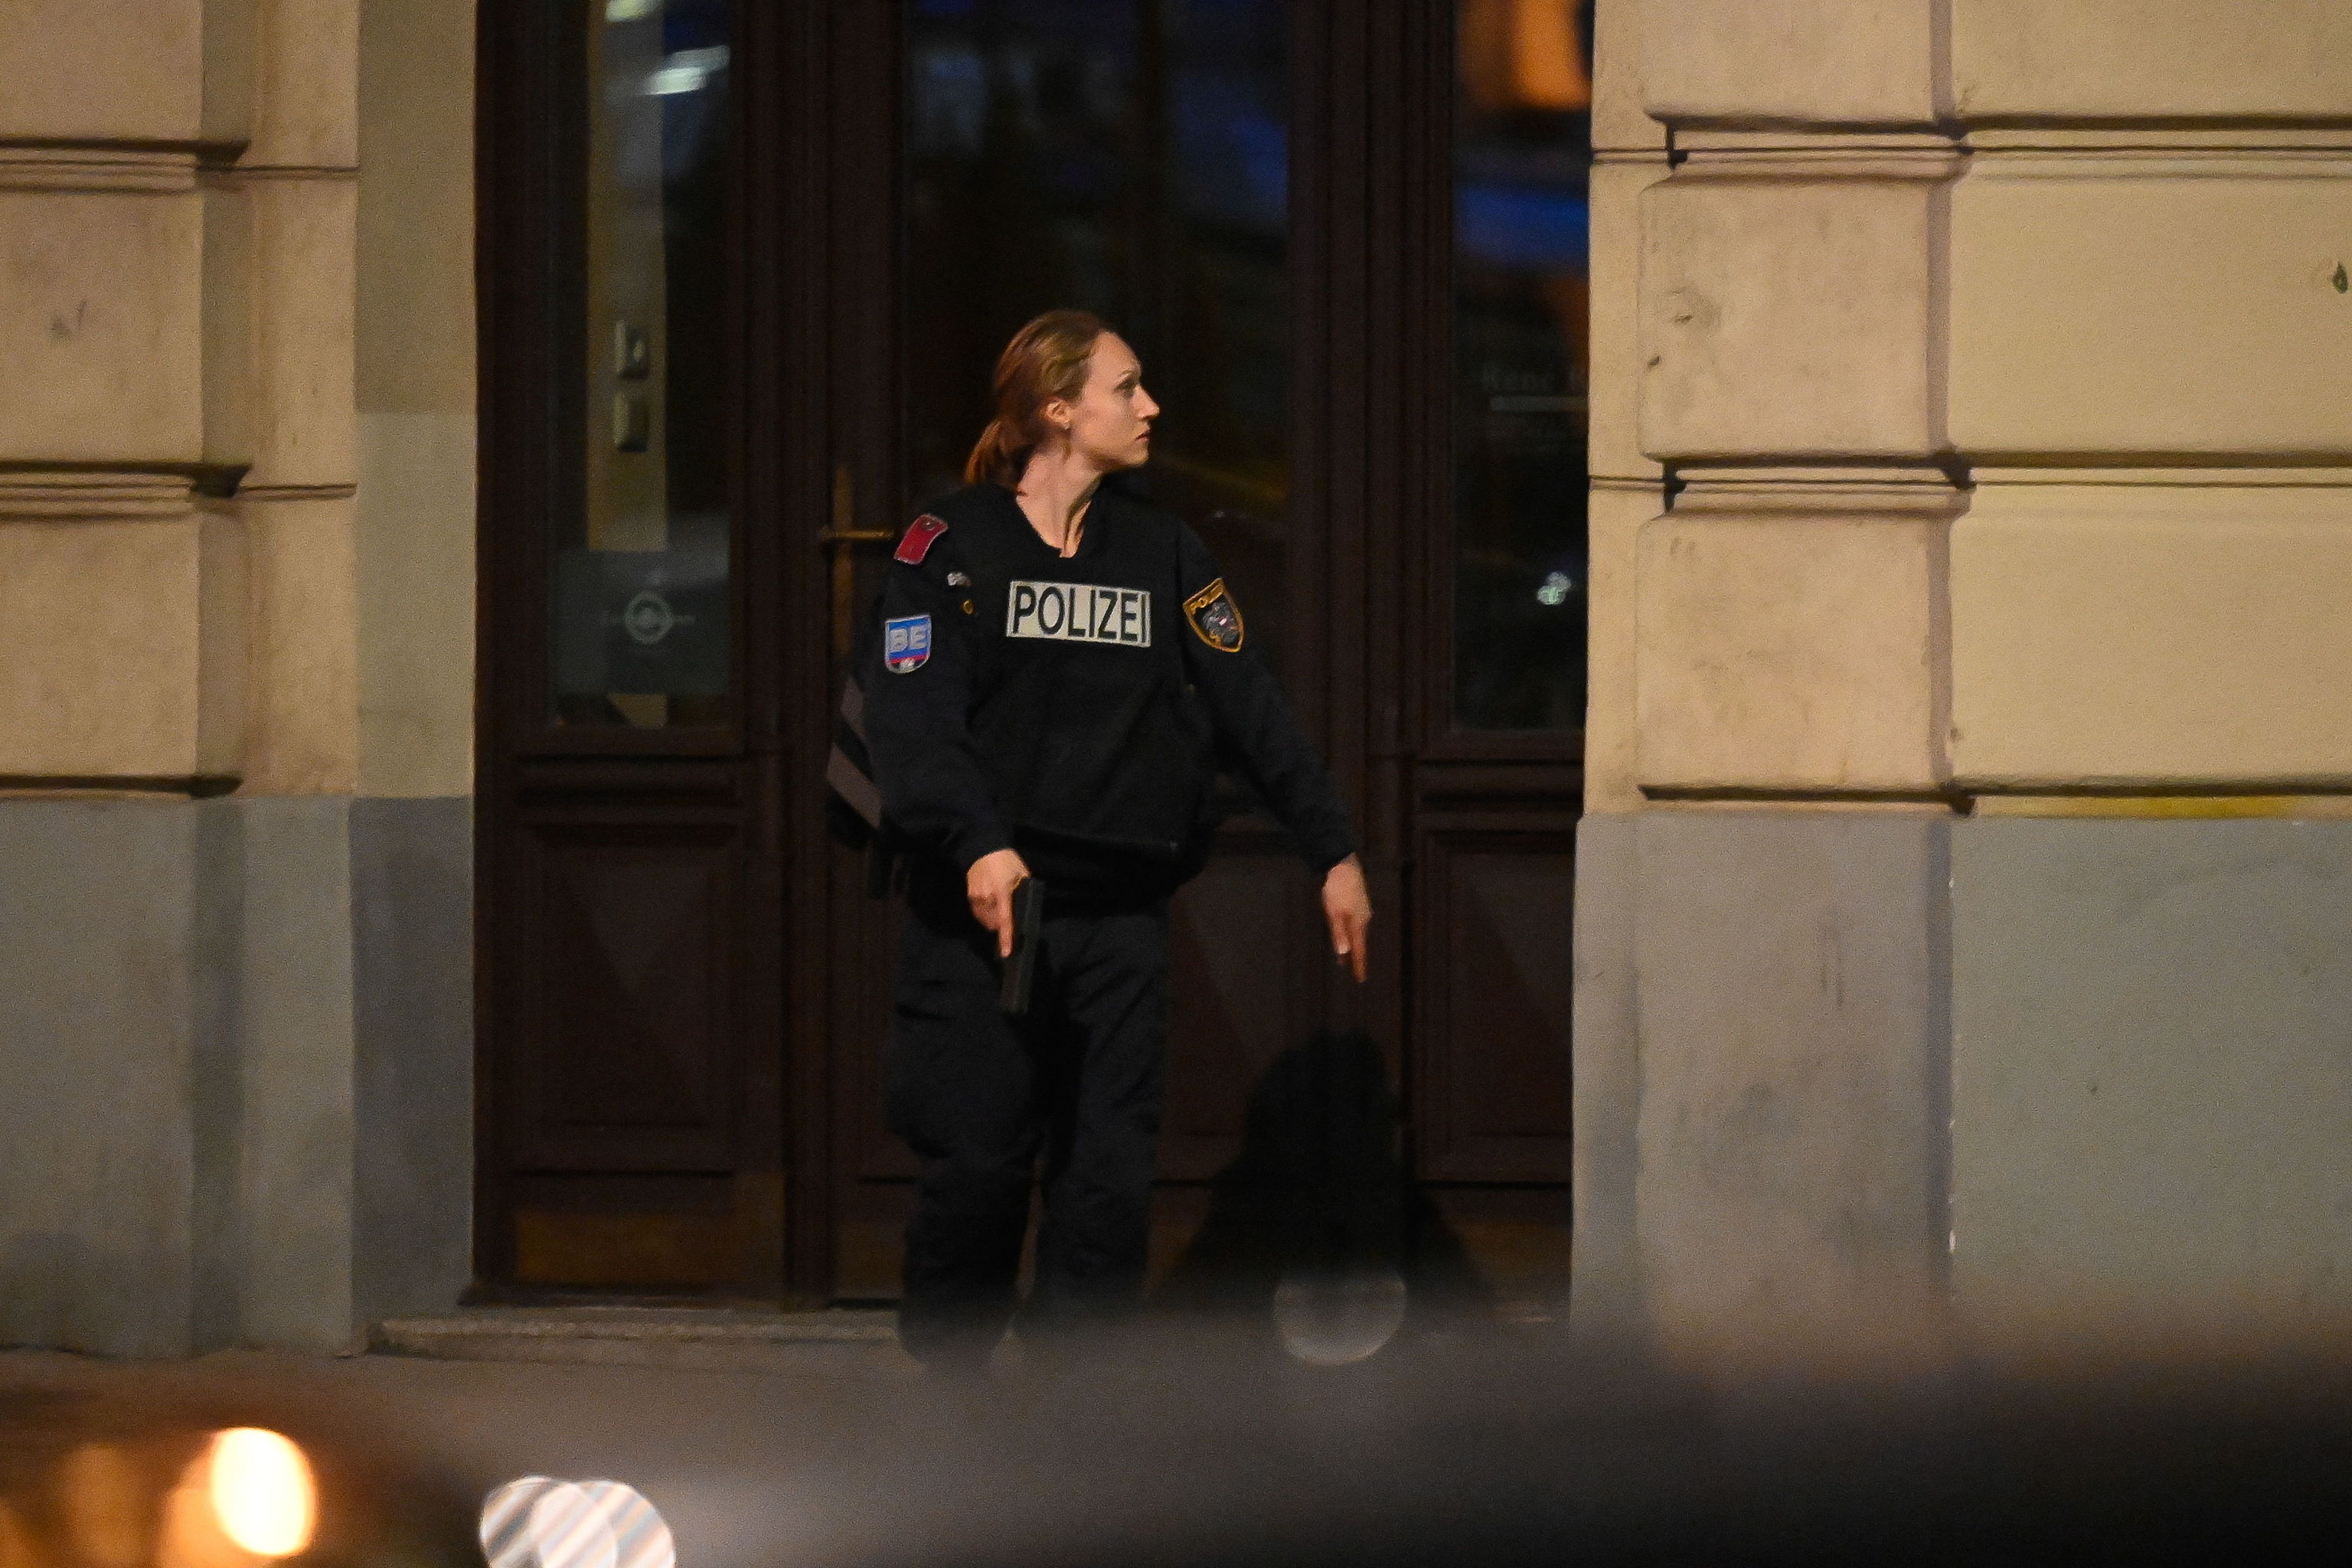 Asesinan a cinco mujeres en Viena en un día, tres de ellas en un burdel